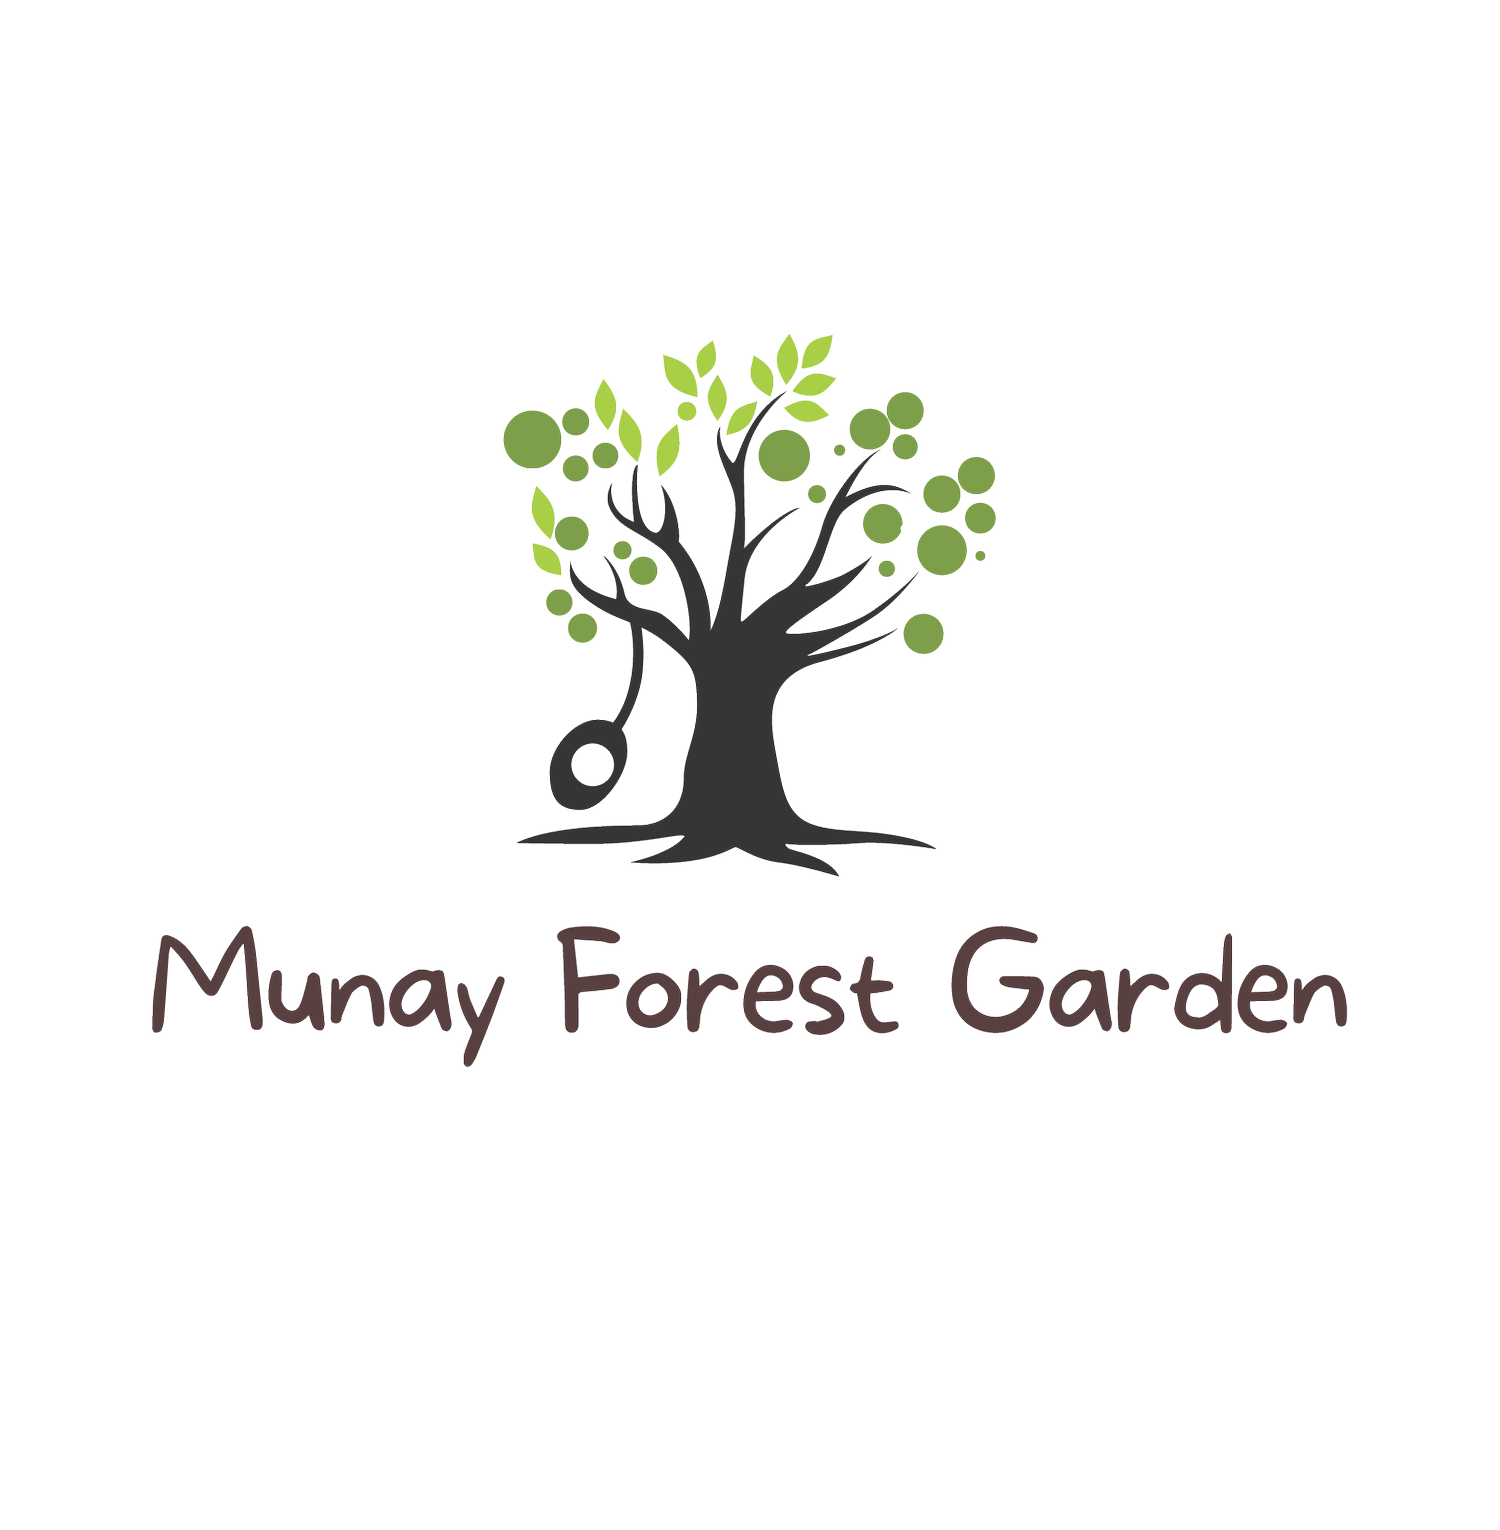 Munay Forest Garden